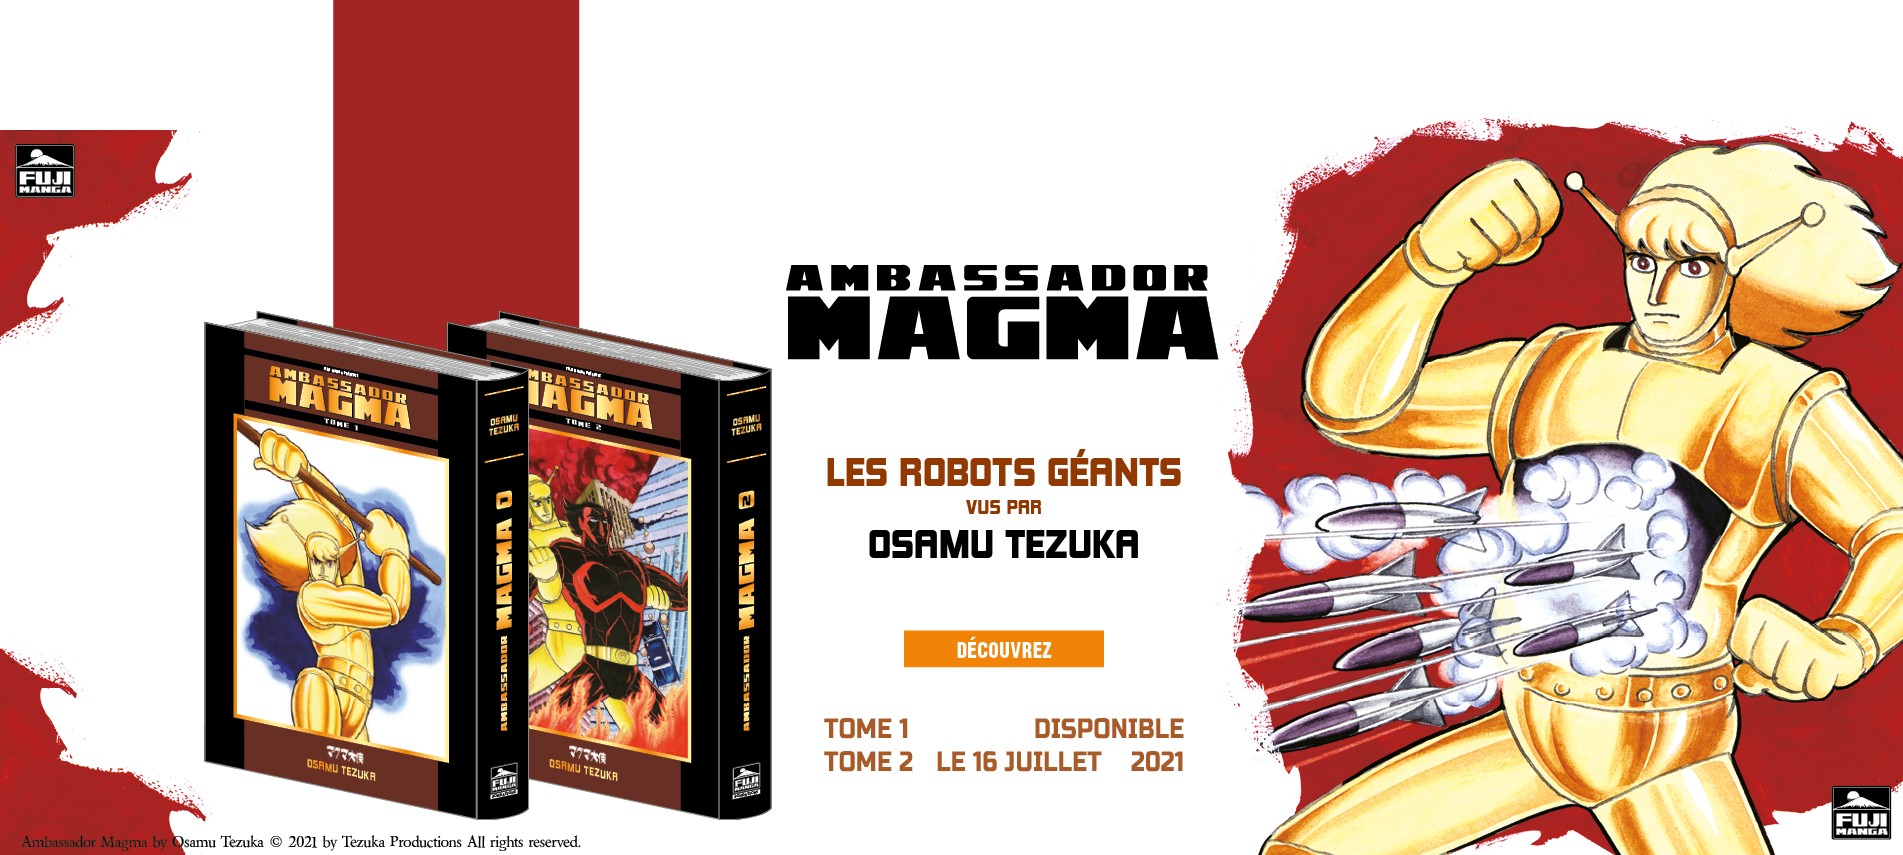 Ambassador Magma - Les Robots Géants vus par Tezuka